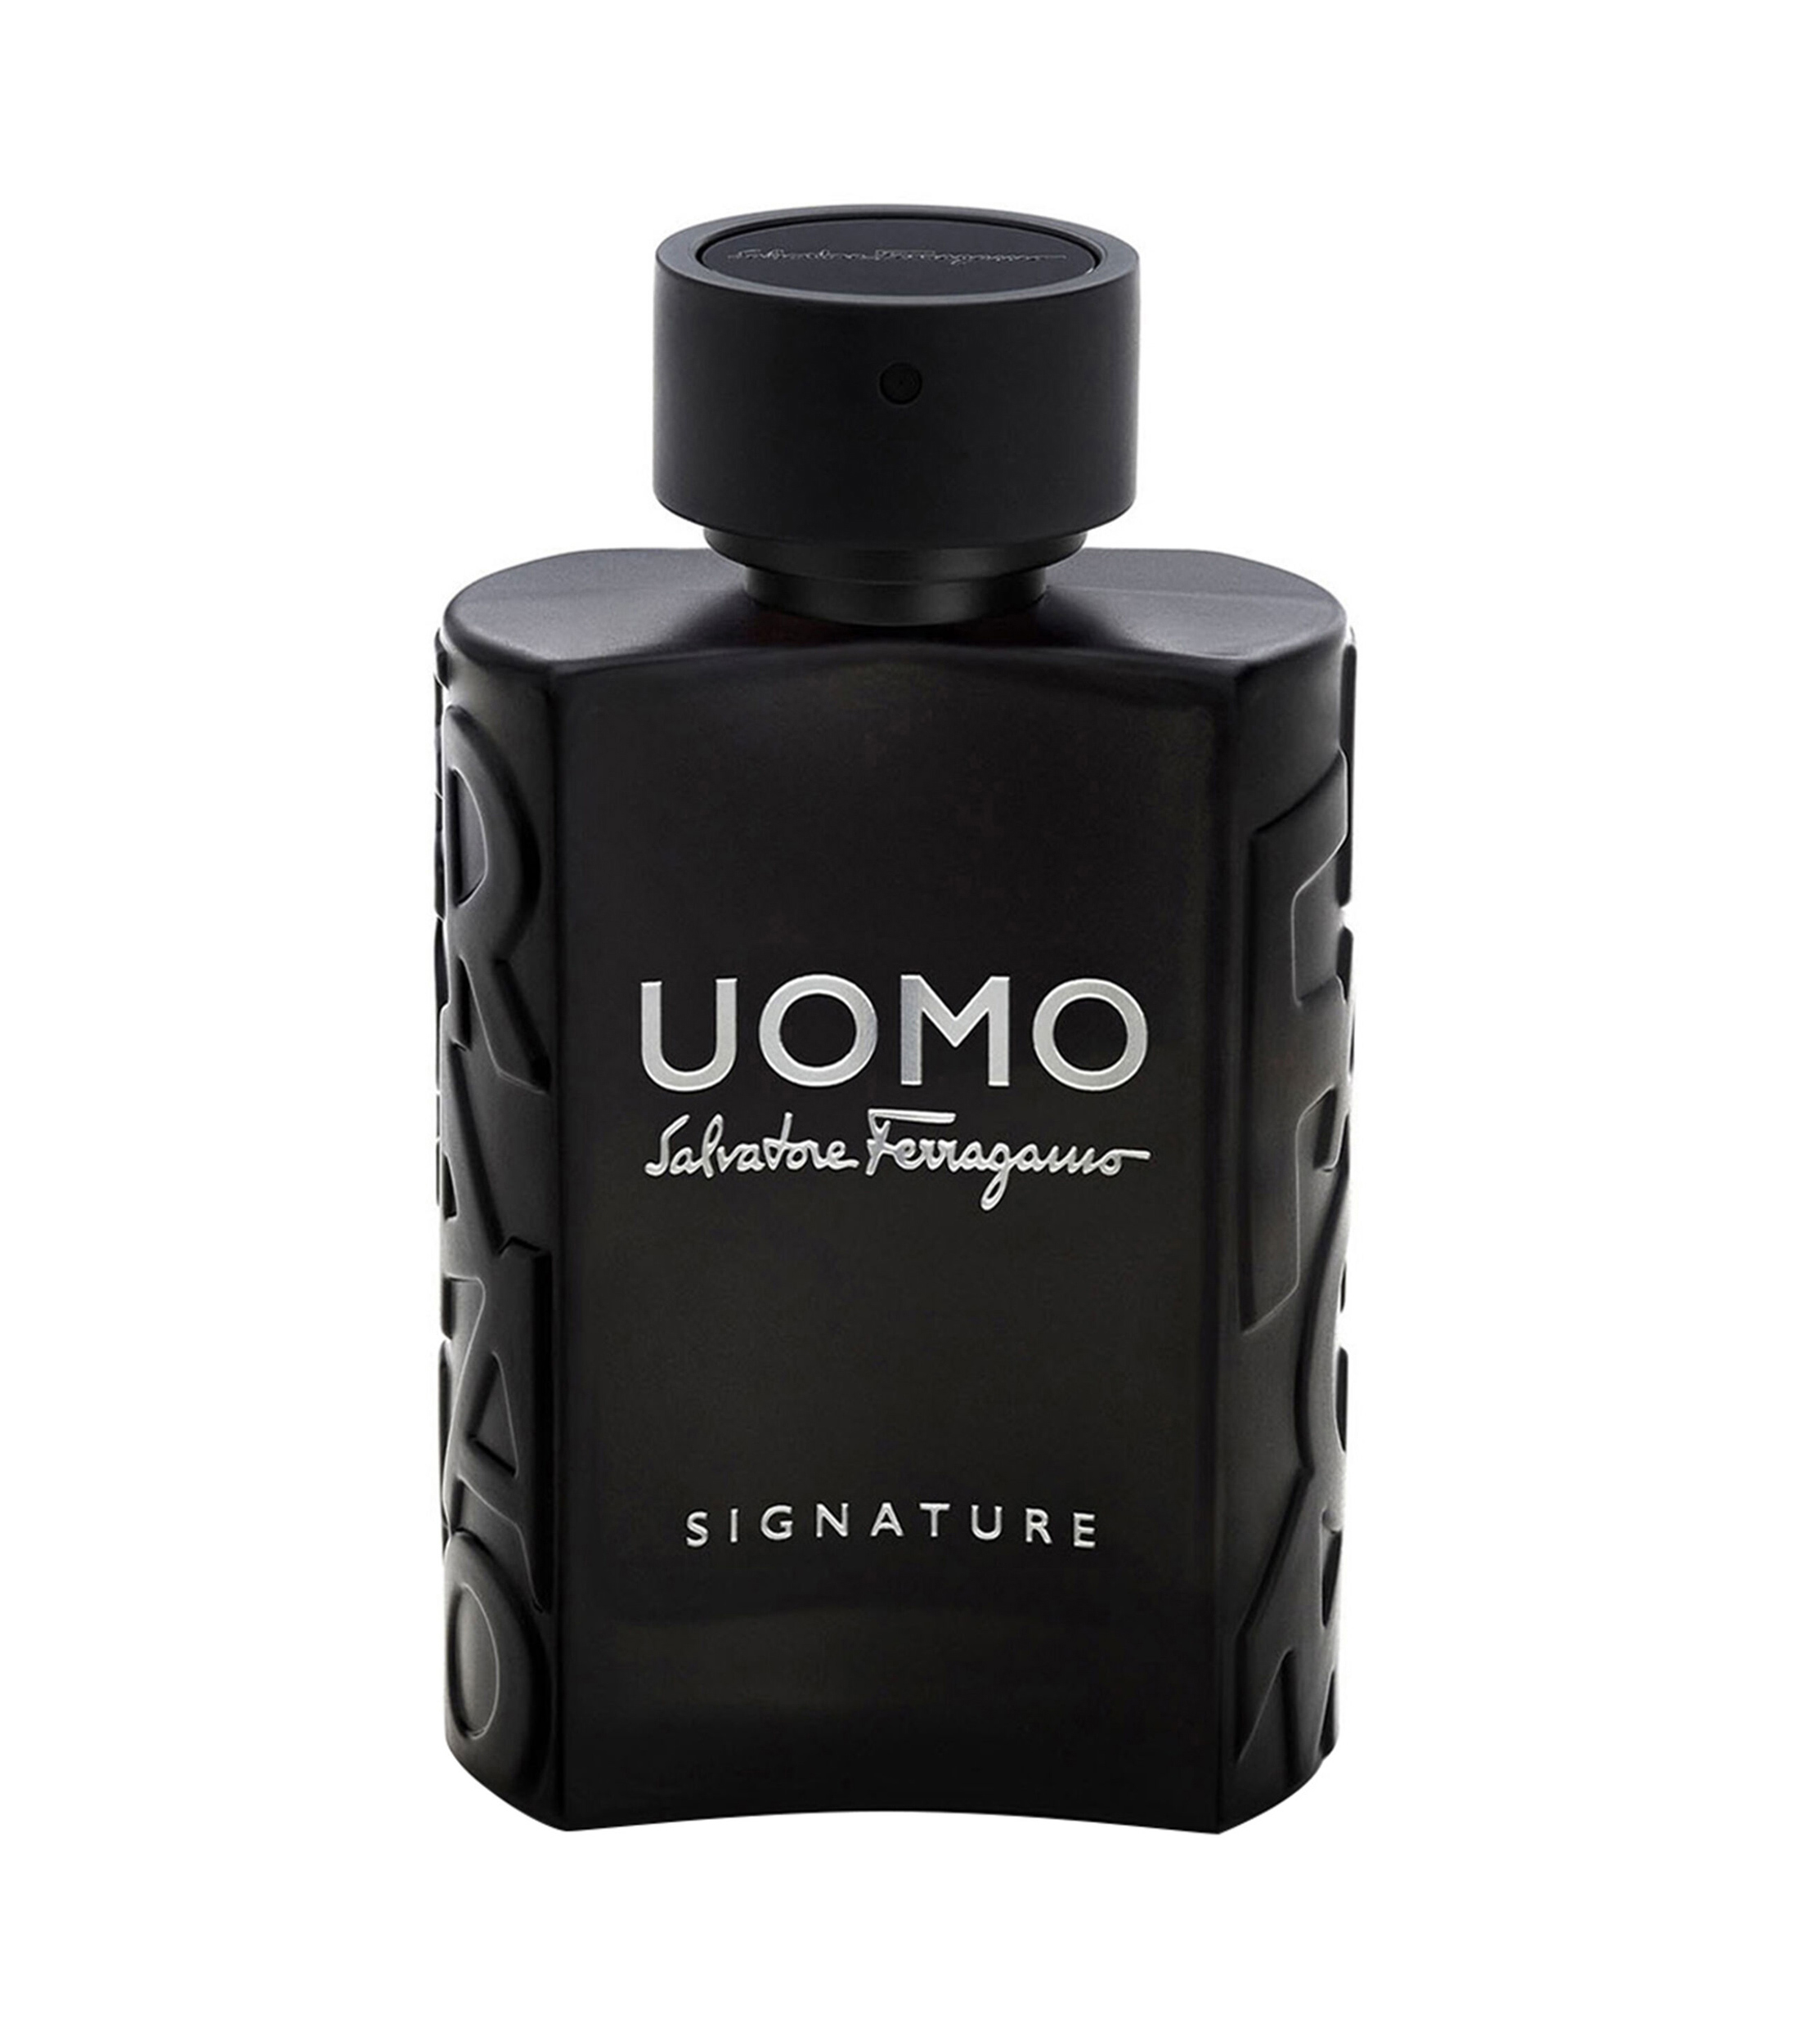 Salvatore Ferragamo Perfume, Uomo Signature Eau de Parfum, 100 ml